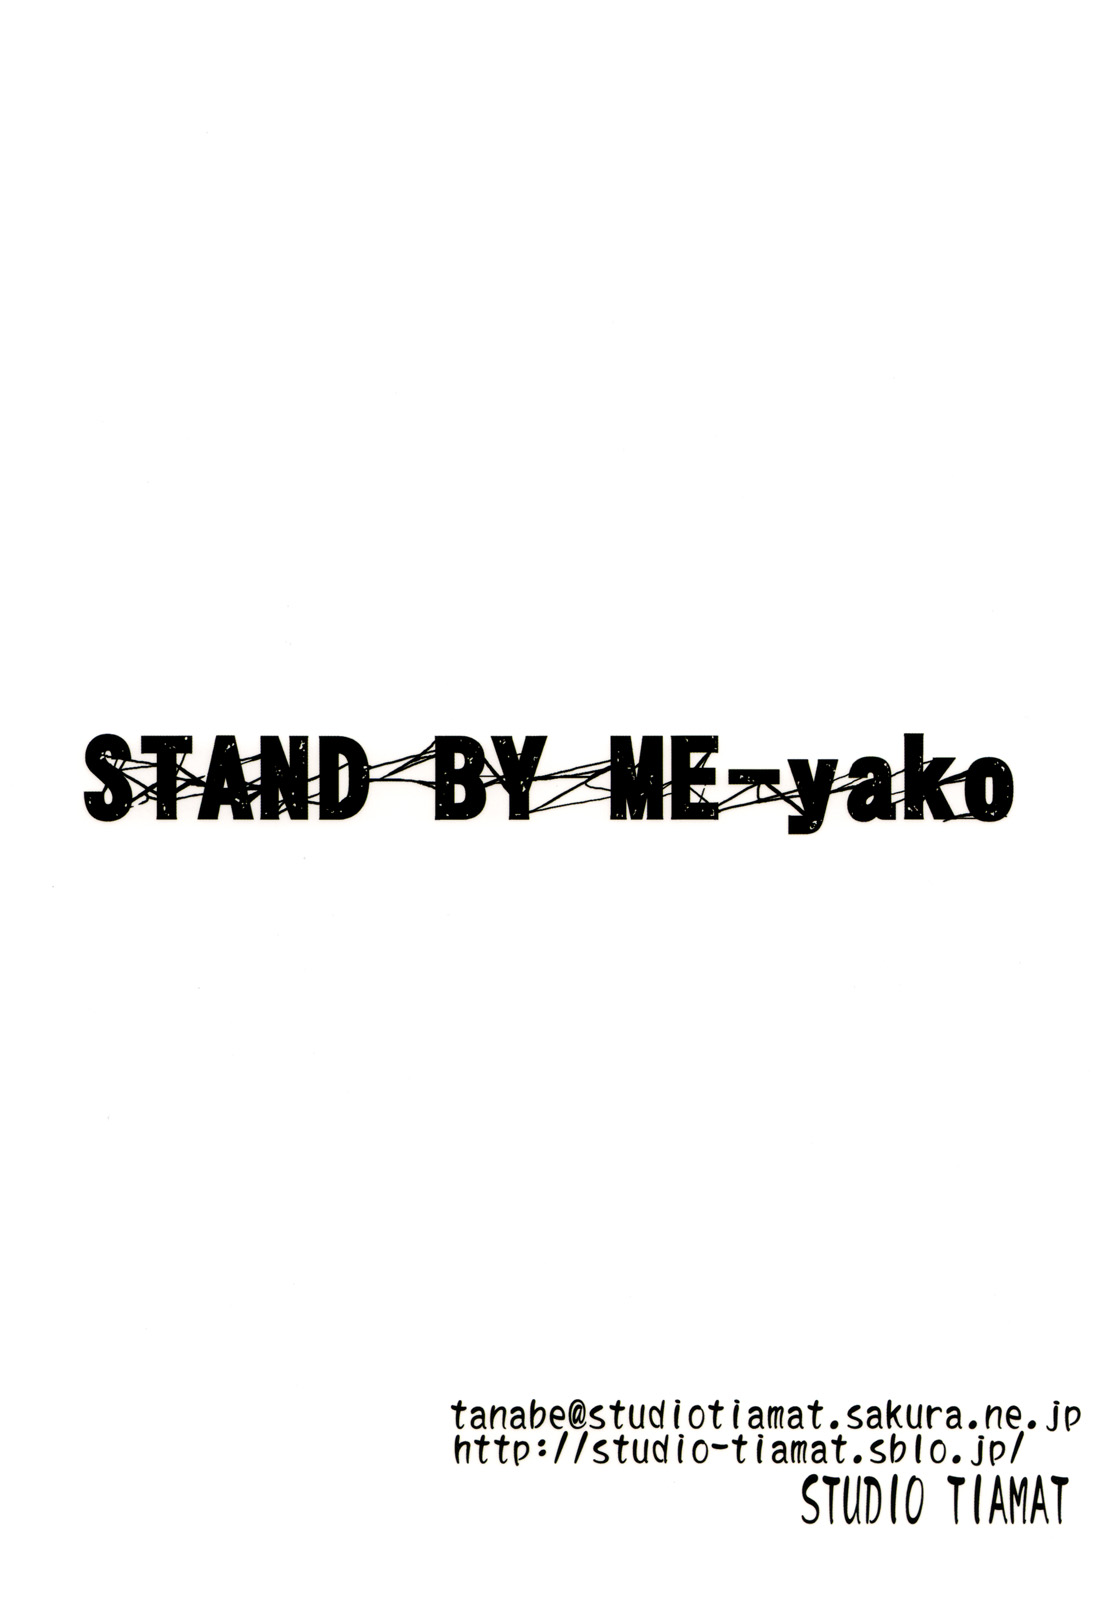 (C78) [Studio Tiamat (Tanabe)] Stand By Me-yako (Tokimeki Memorial 4) (C78) [STUDIO TIAMAT (TANABE)] STAND BY ME-yako (ときめきメモリアル4)